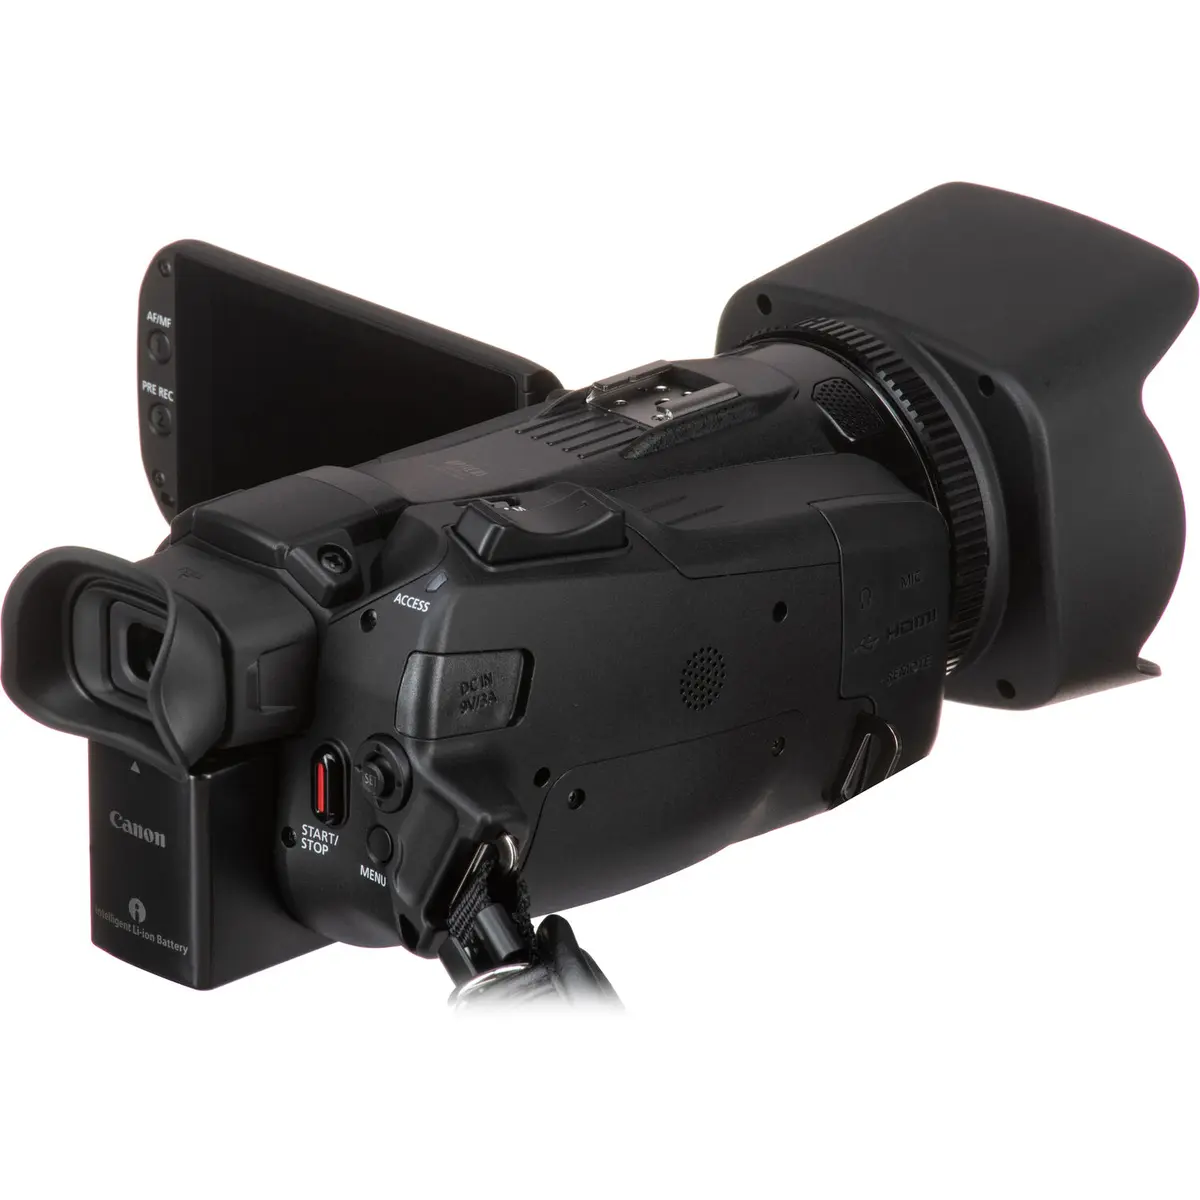 3. Canon LEGRIA HF G70 Camcorder